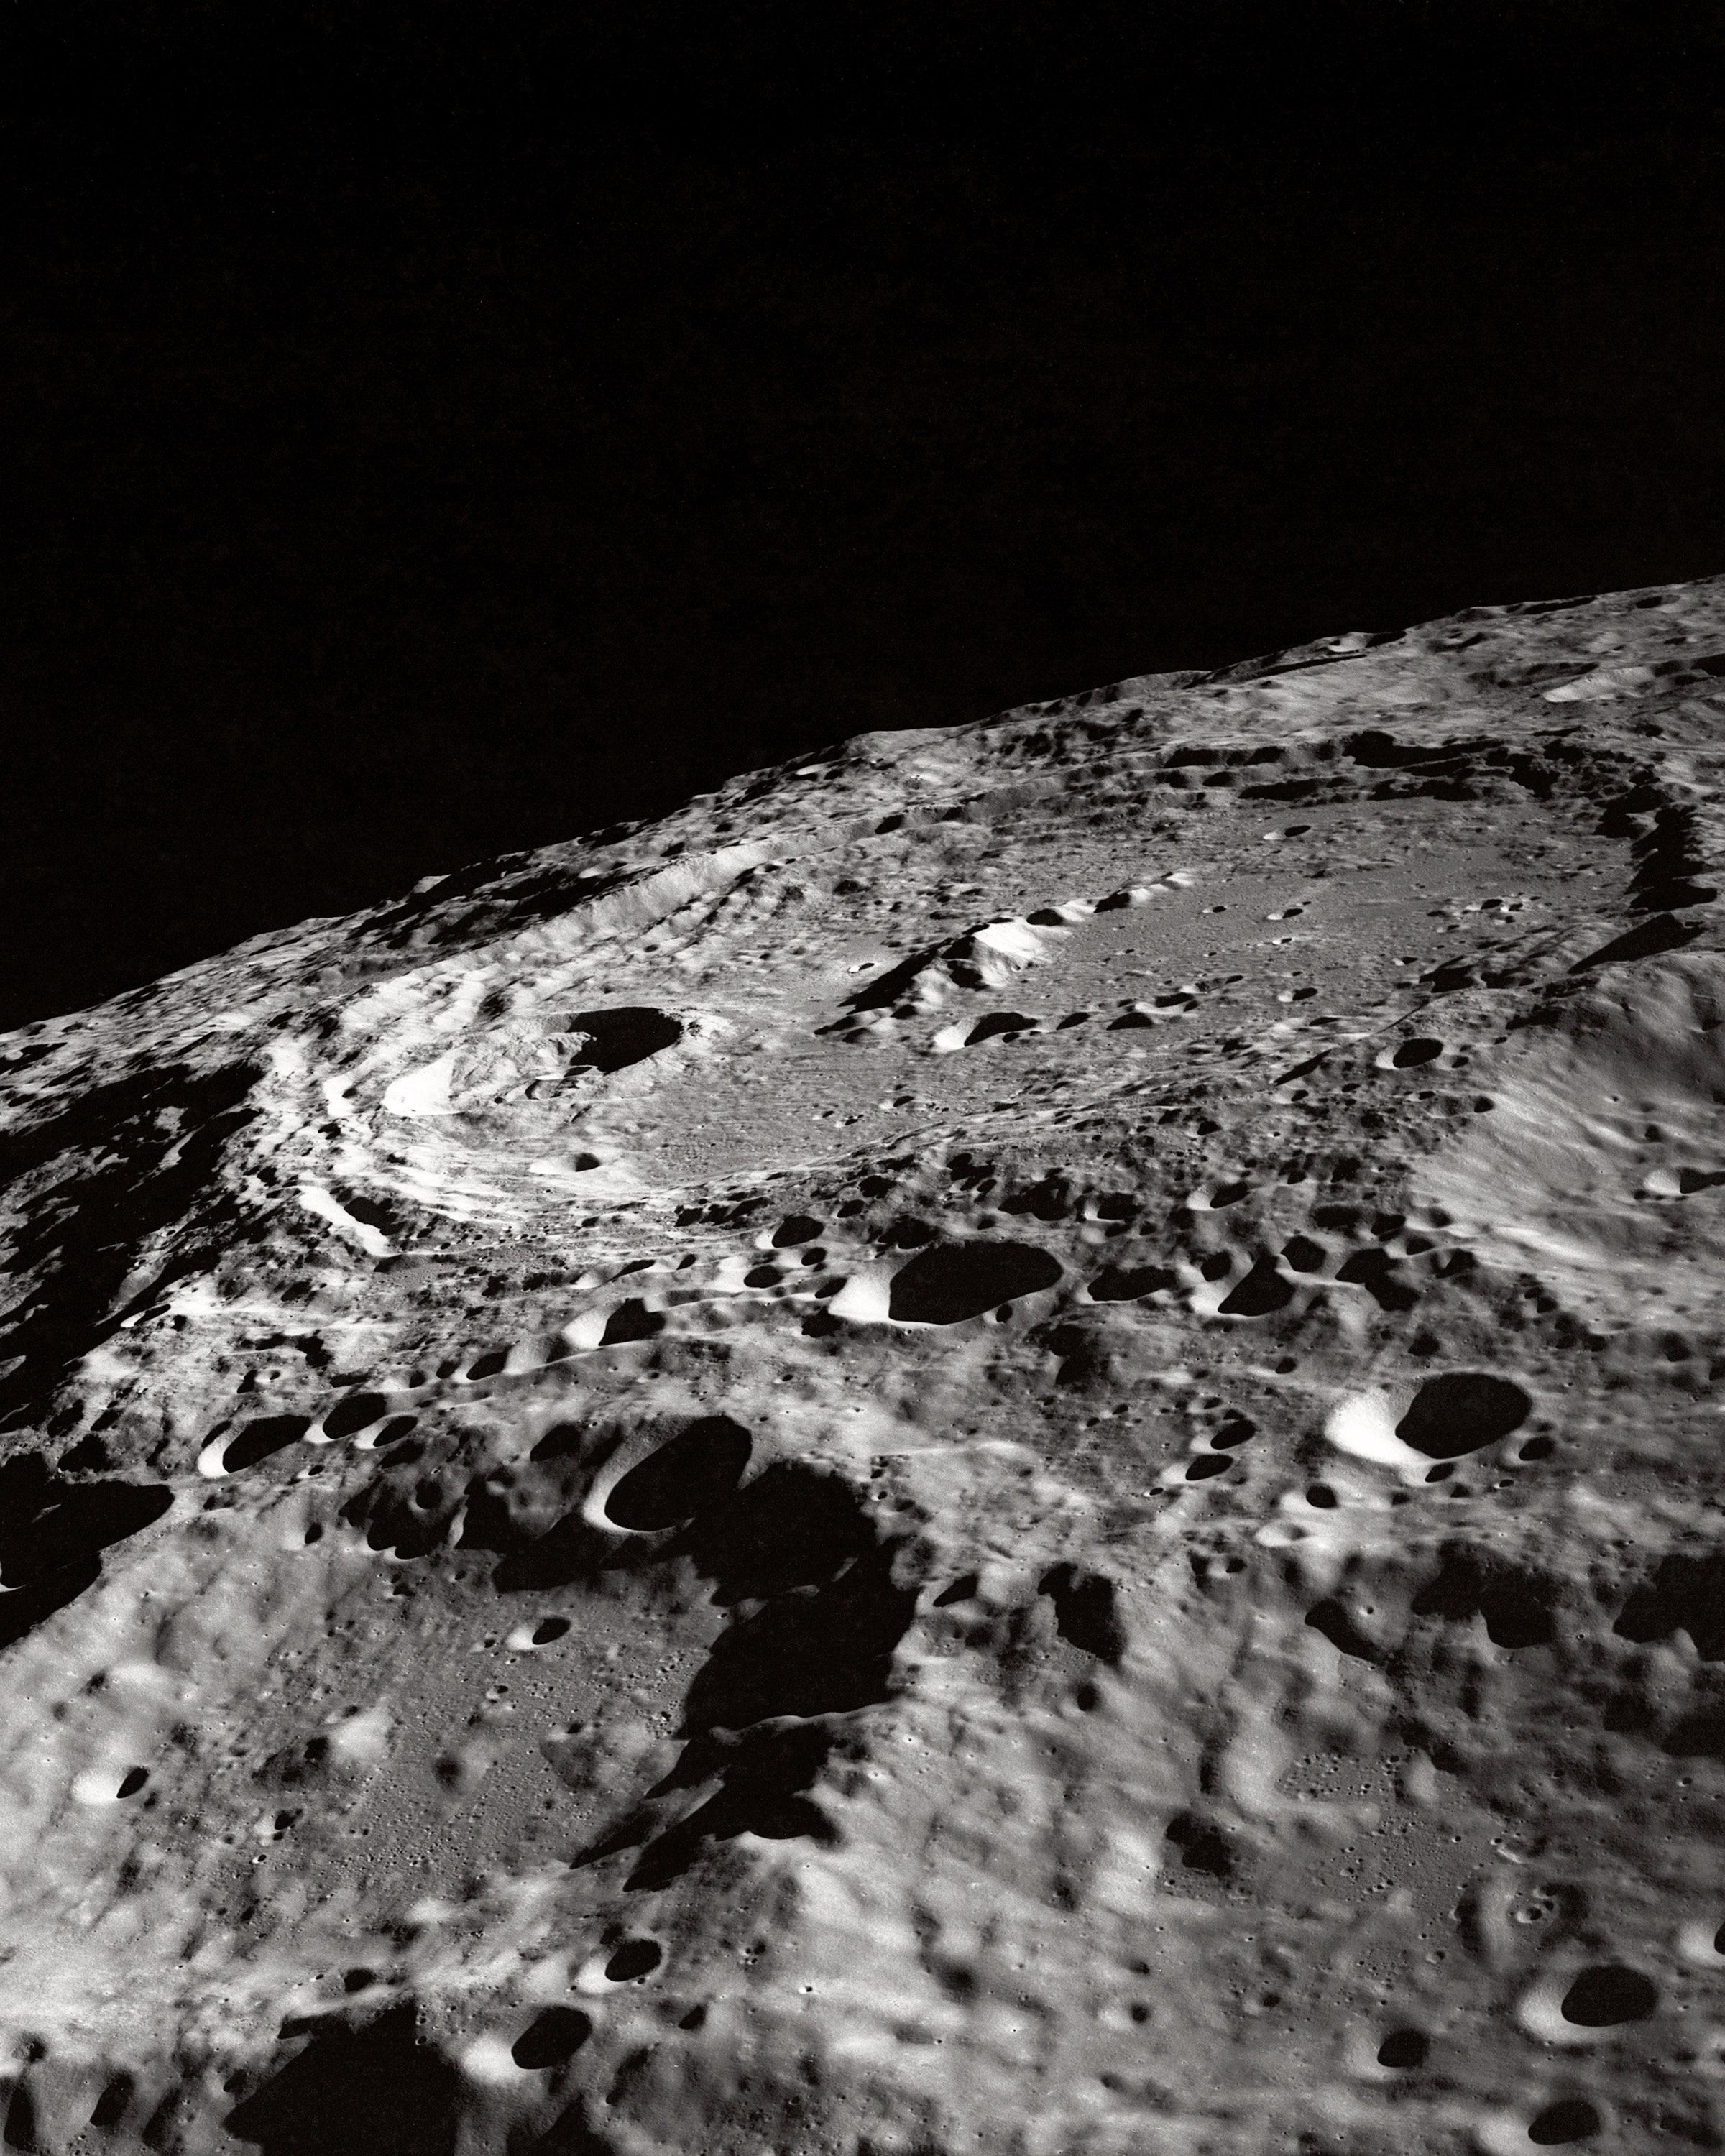 Space #moon # tetxure # textured # grunge # crater #wallpaper HD 4k